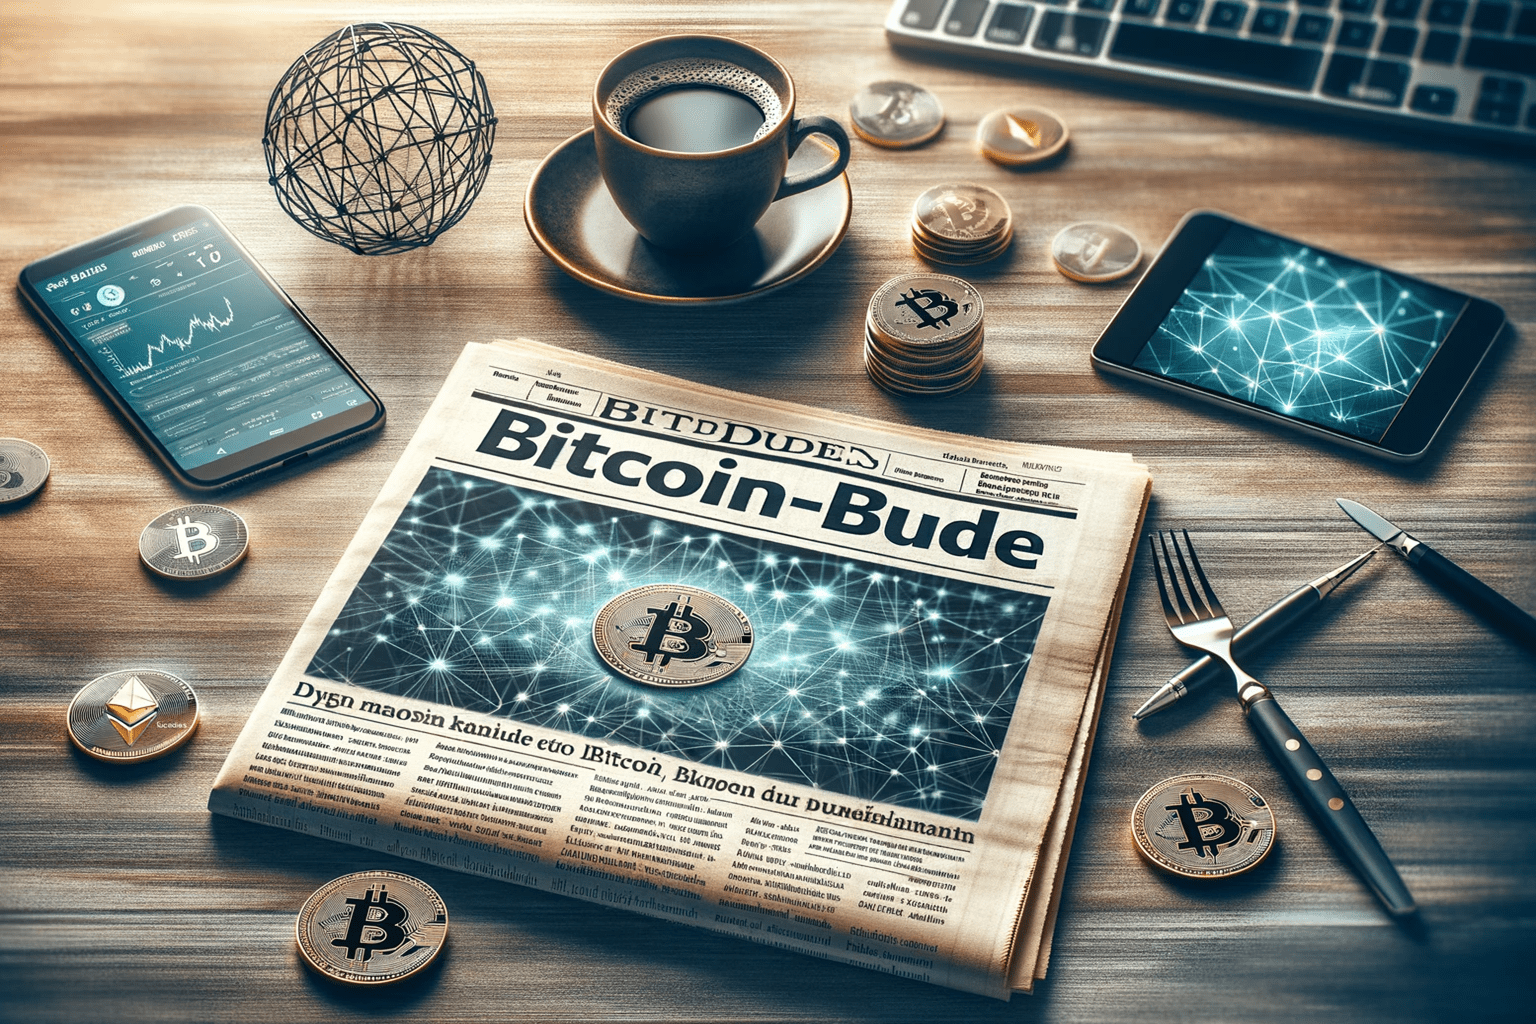 Bitcoin und Ethereum News auf Bitcoin-Bude